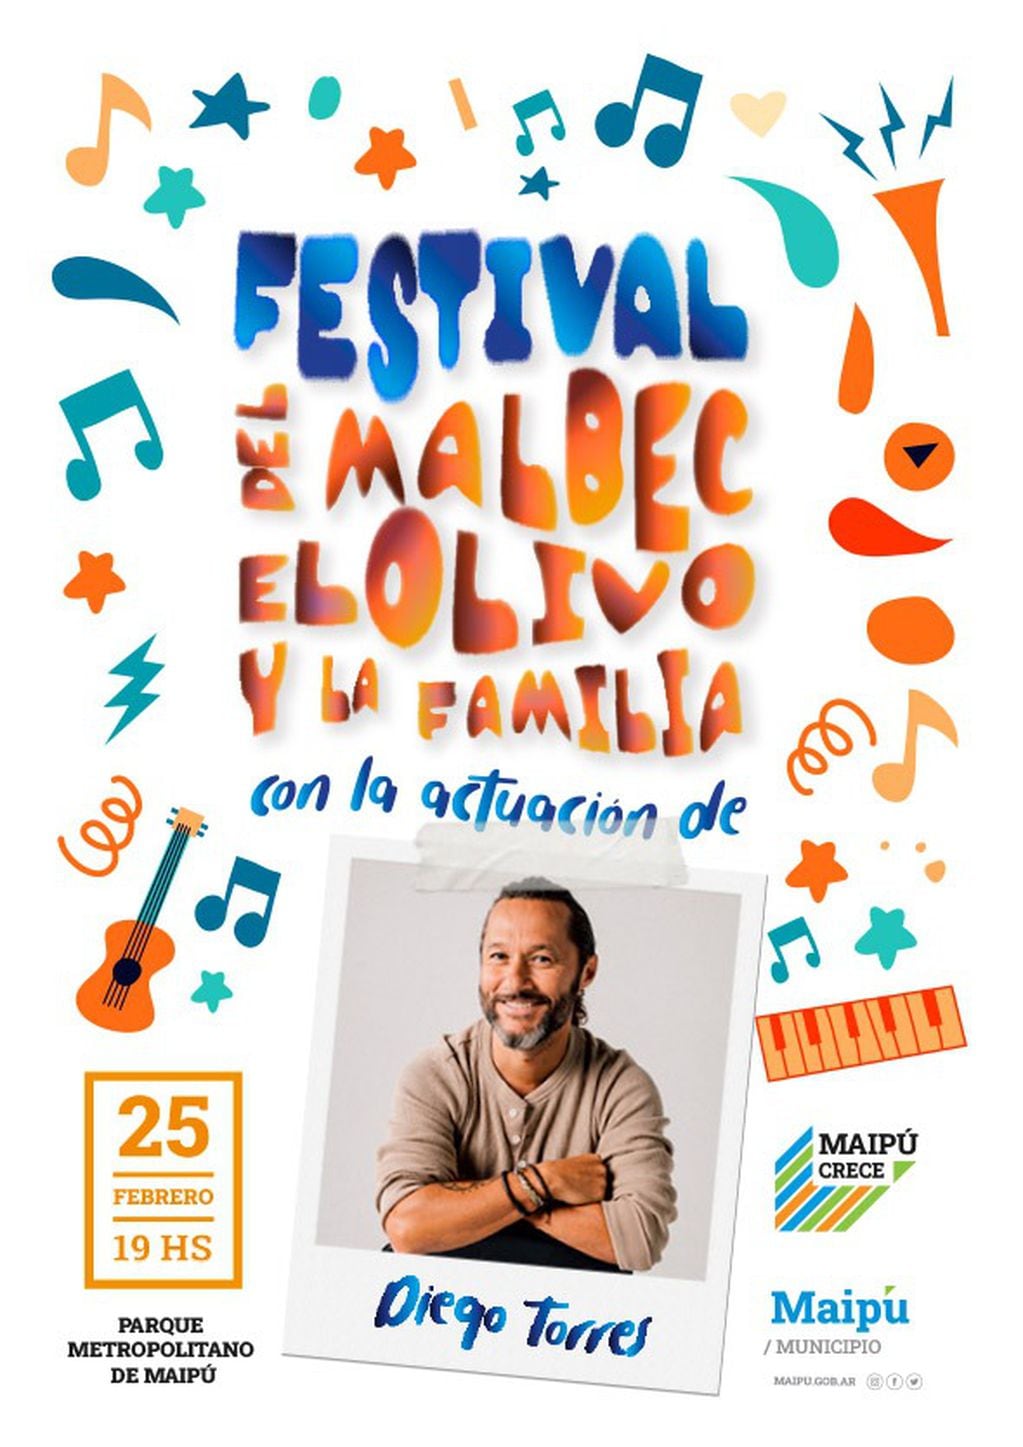 Diego Torres estará presente en el Festival del Malbec, el Olivo y la Familia, de Maipú.